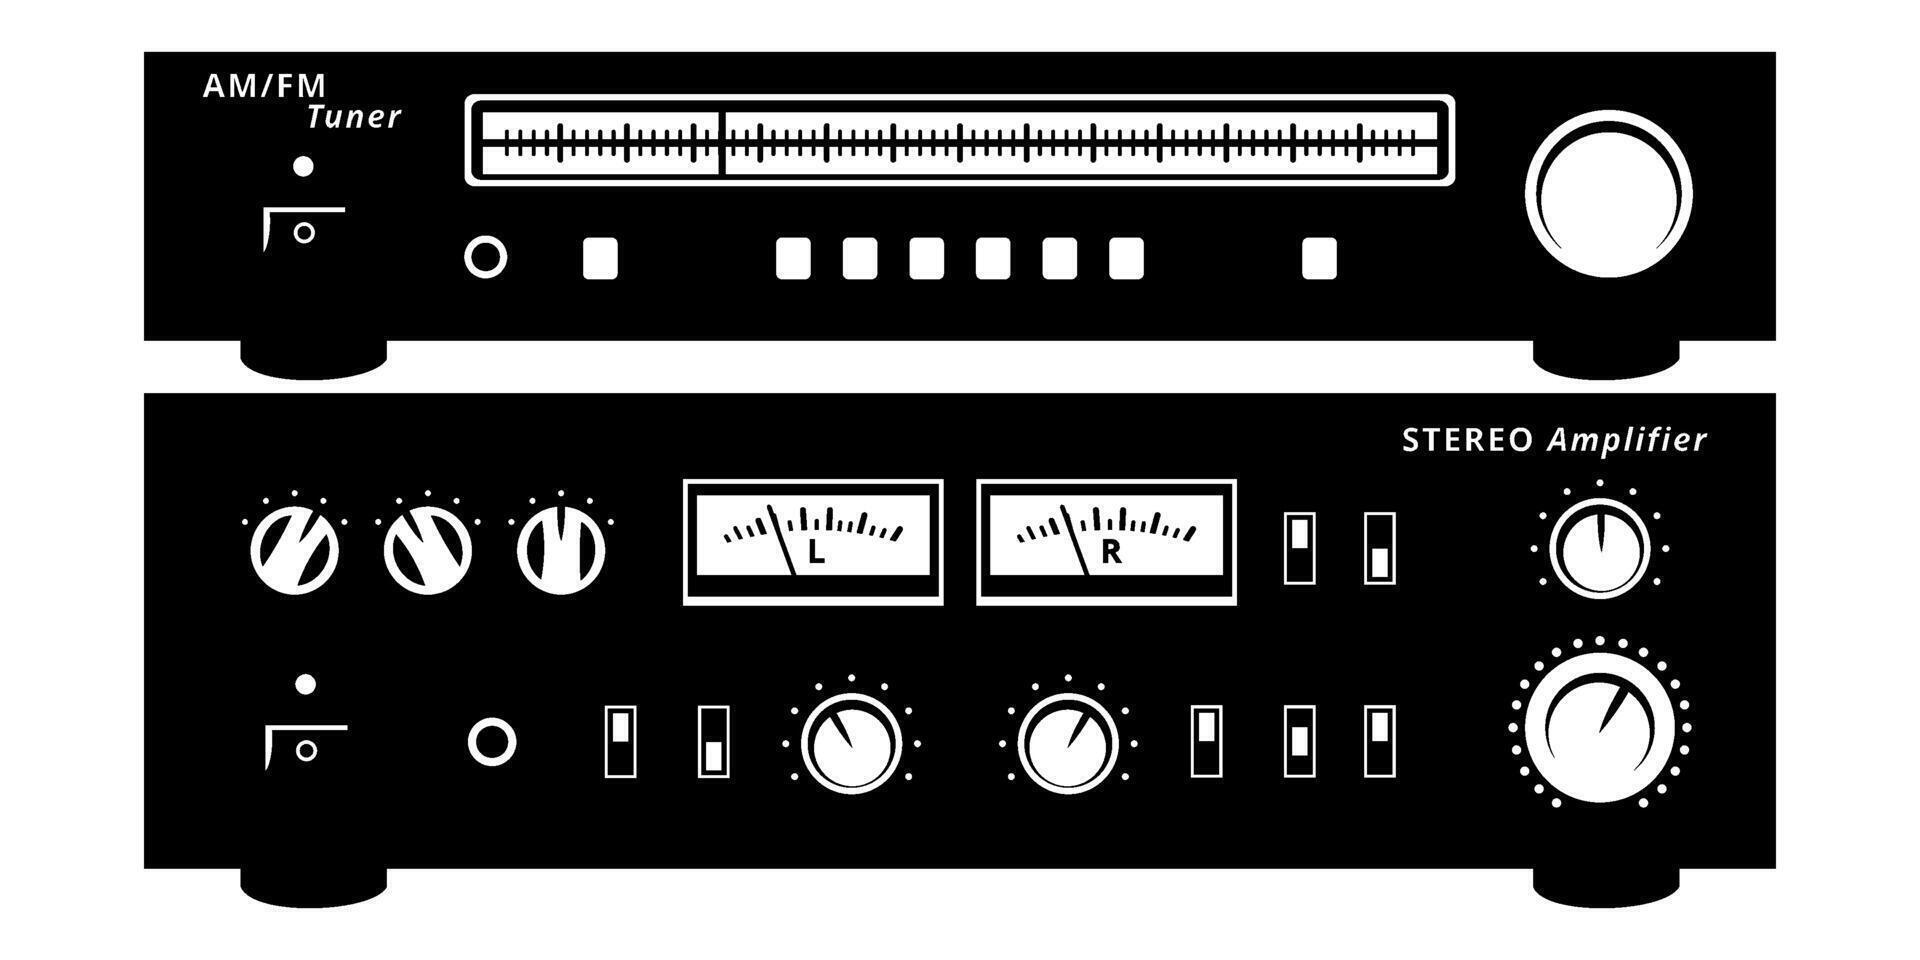 radio sintonizador y estéreo amplificador siluetas colocar. Clásico término análogo audio equipo. vector clipart aislado en blanco.